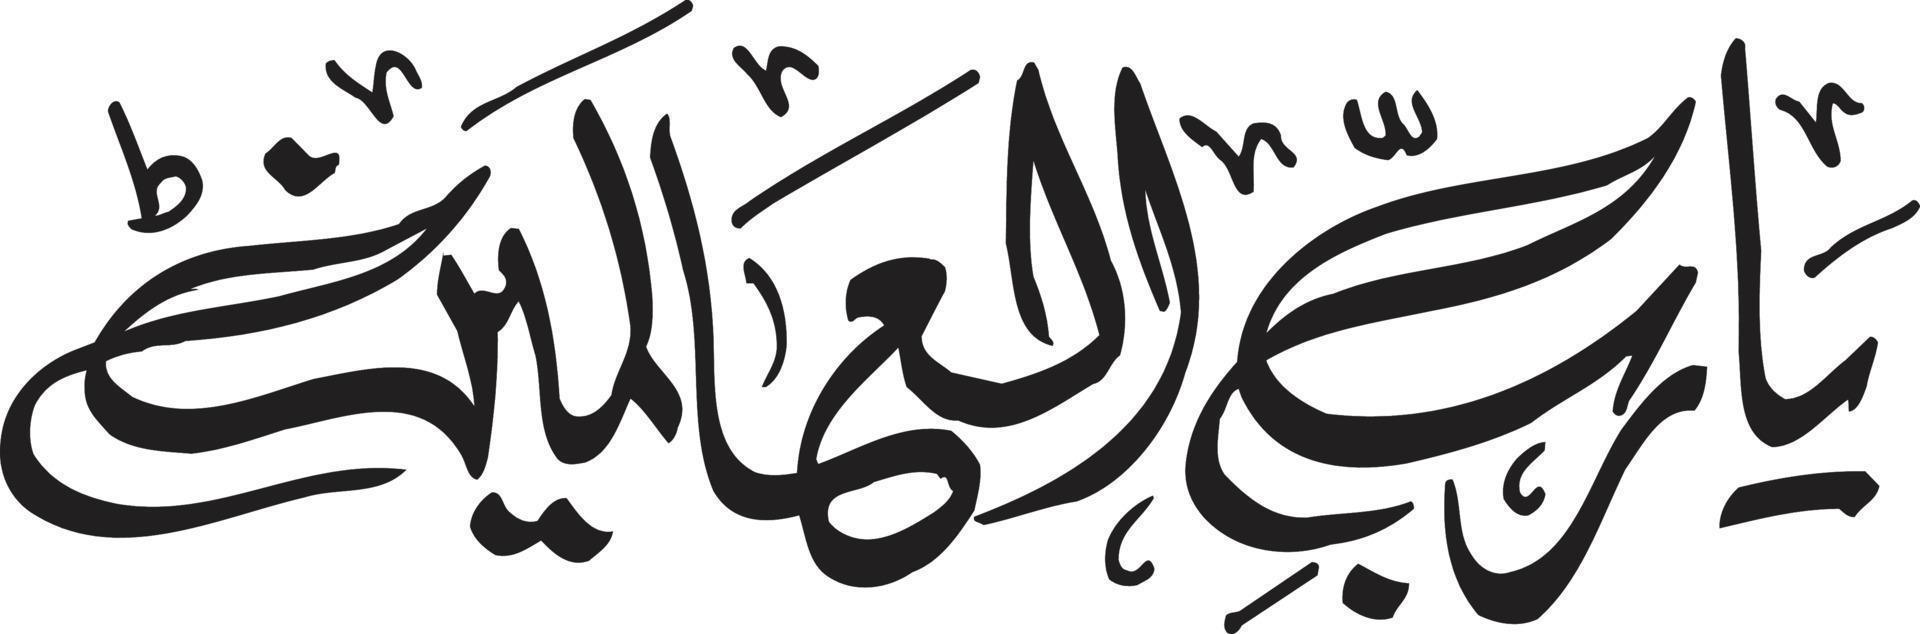 ja rab alalaam titel Islamitisch Urdu Arabisch schoonschrift vrij vector